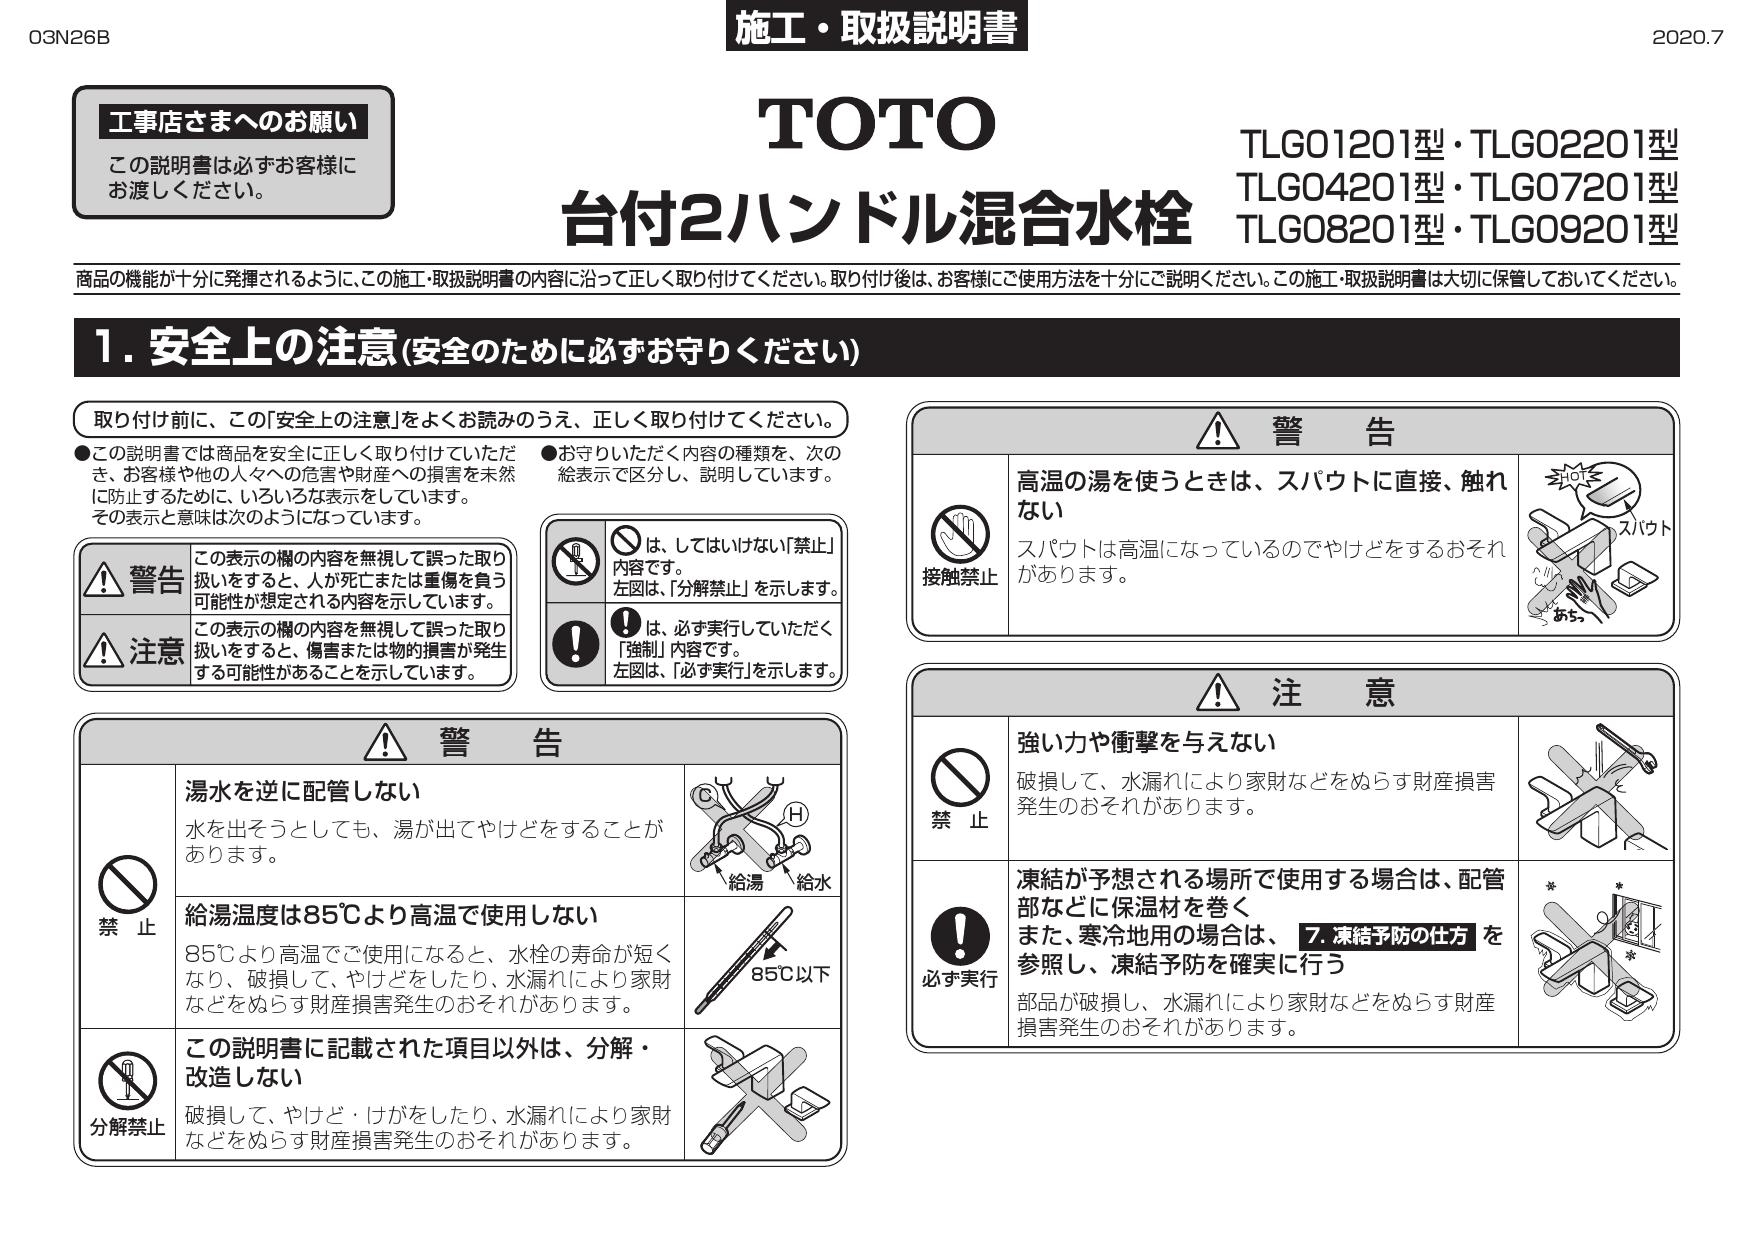 TOTO L505+TLG02201J+TLC4A1FX2+TLDP2201J取扱説明書 商品図面 施工 